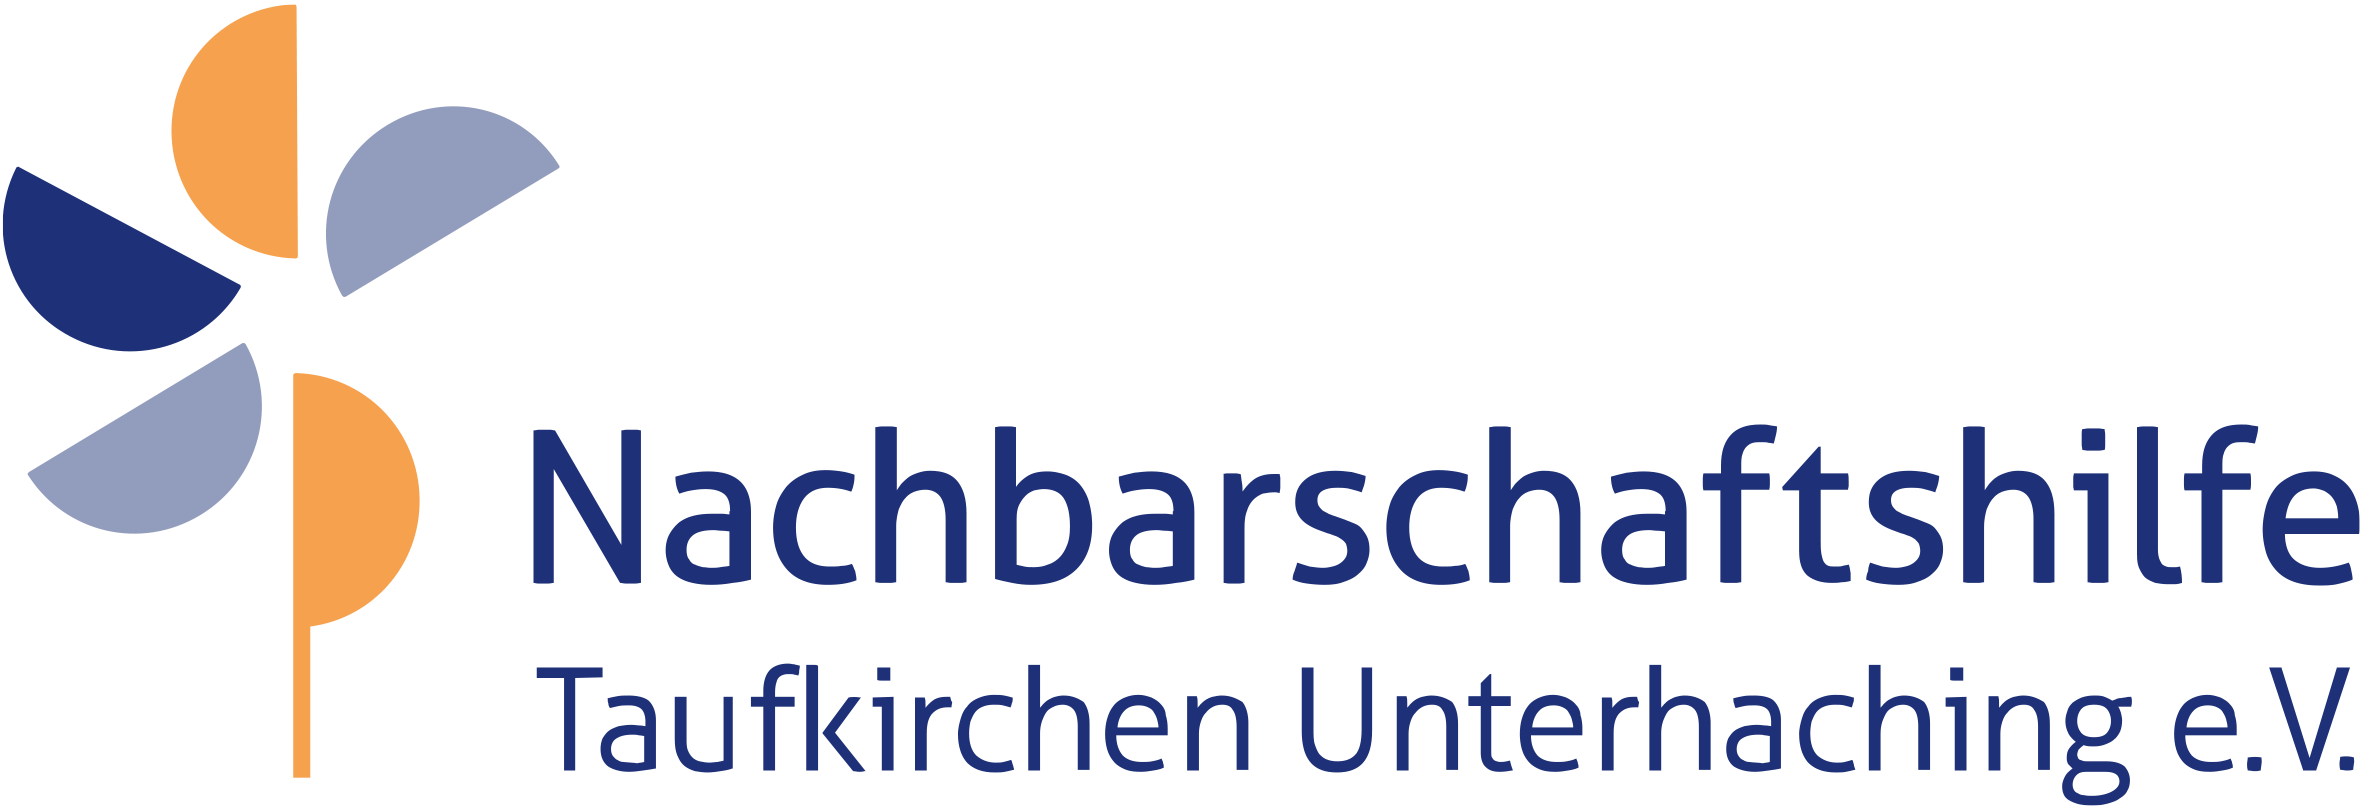 Nachbarschaftshilfe Taufkirchen Unterhaching - Service für Mitglieder